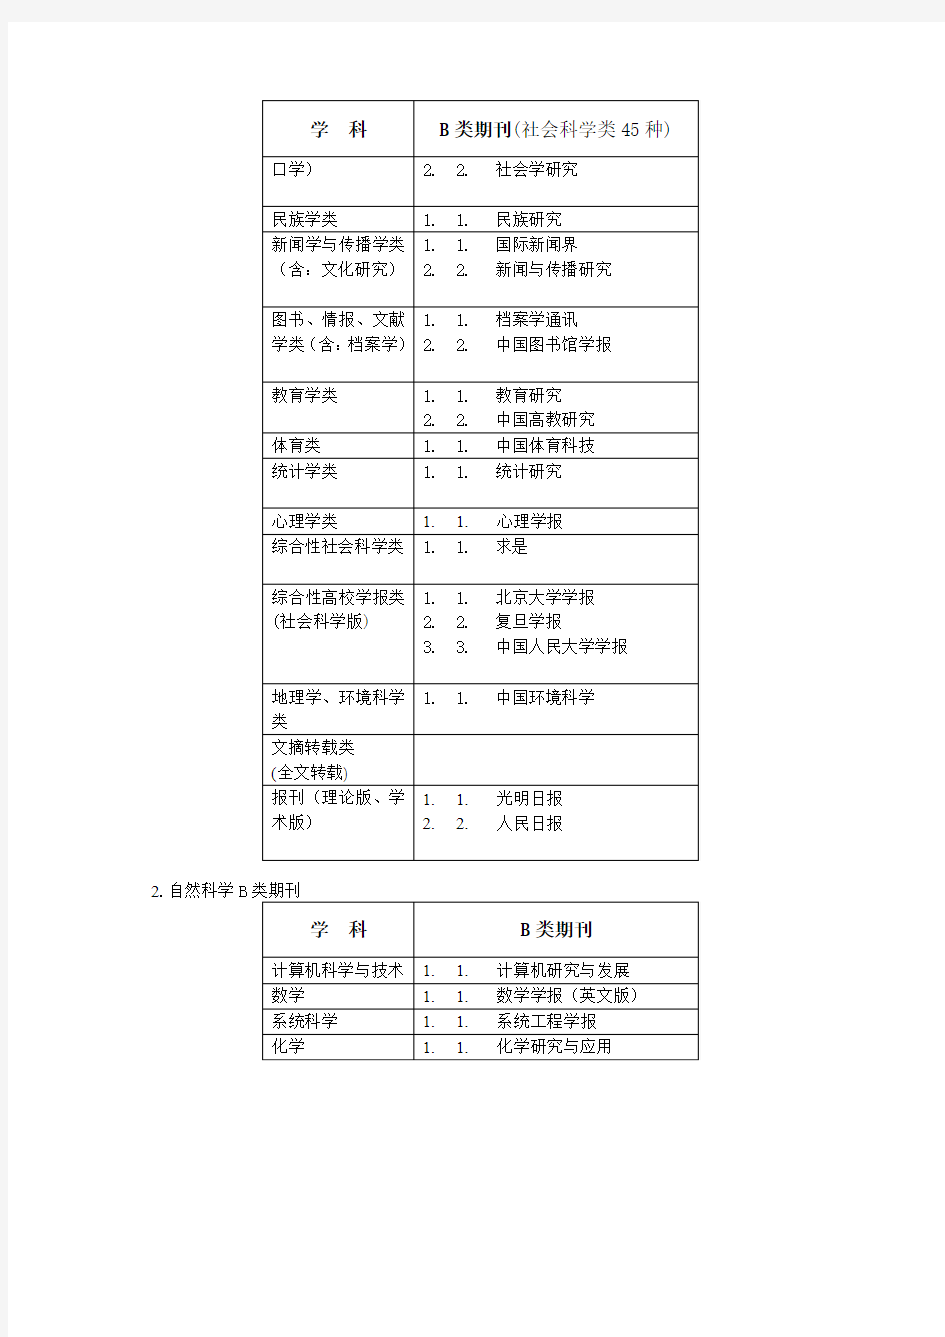 《中国人民大学核心期刊》分为A、B、C三类